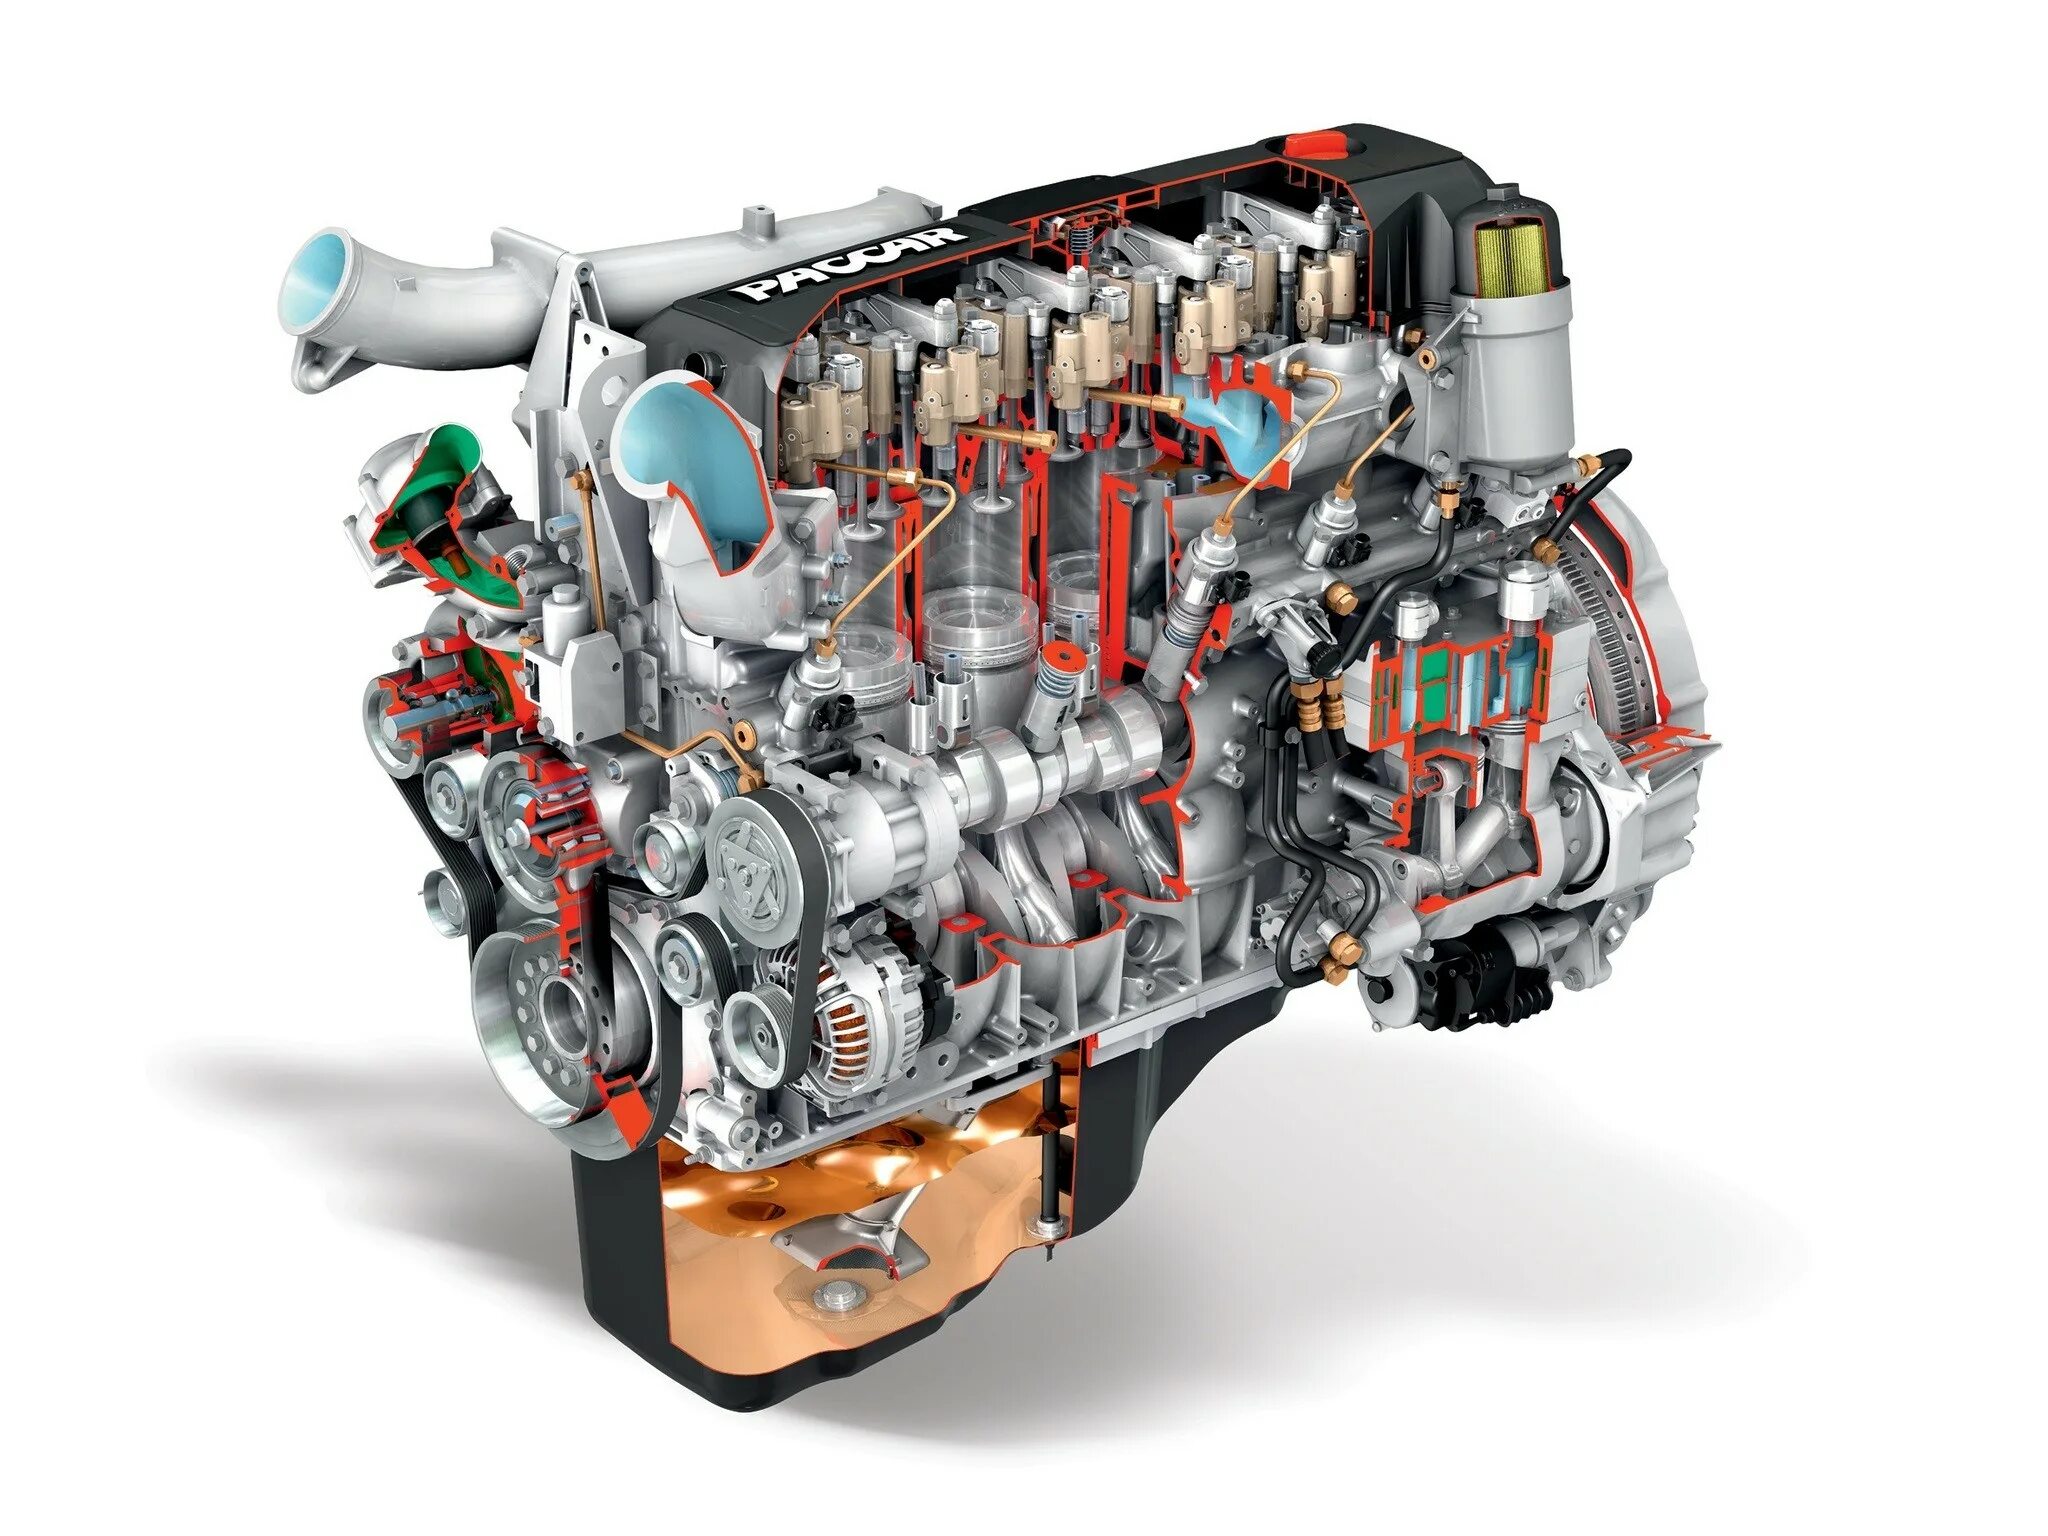 Двигатель man Diesel & Turbo” s35mc. ДВС Paccar. Cummins c300 двигатель. Дизельный двигатель внутреннего сгорания. Лучшие дизельные моторы